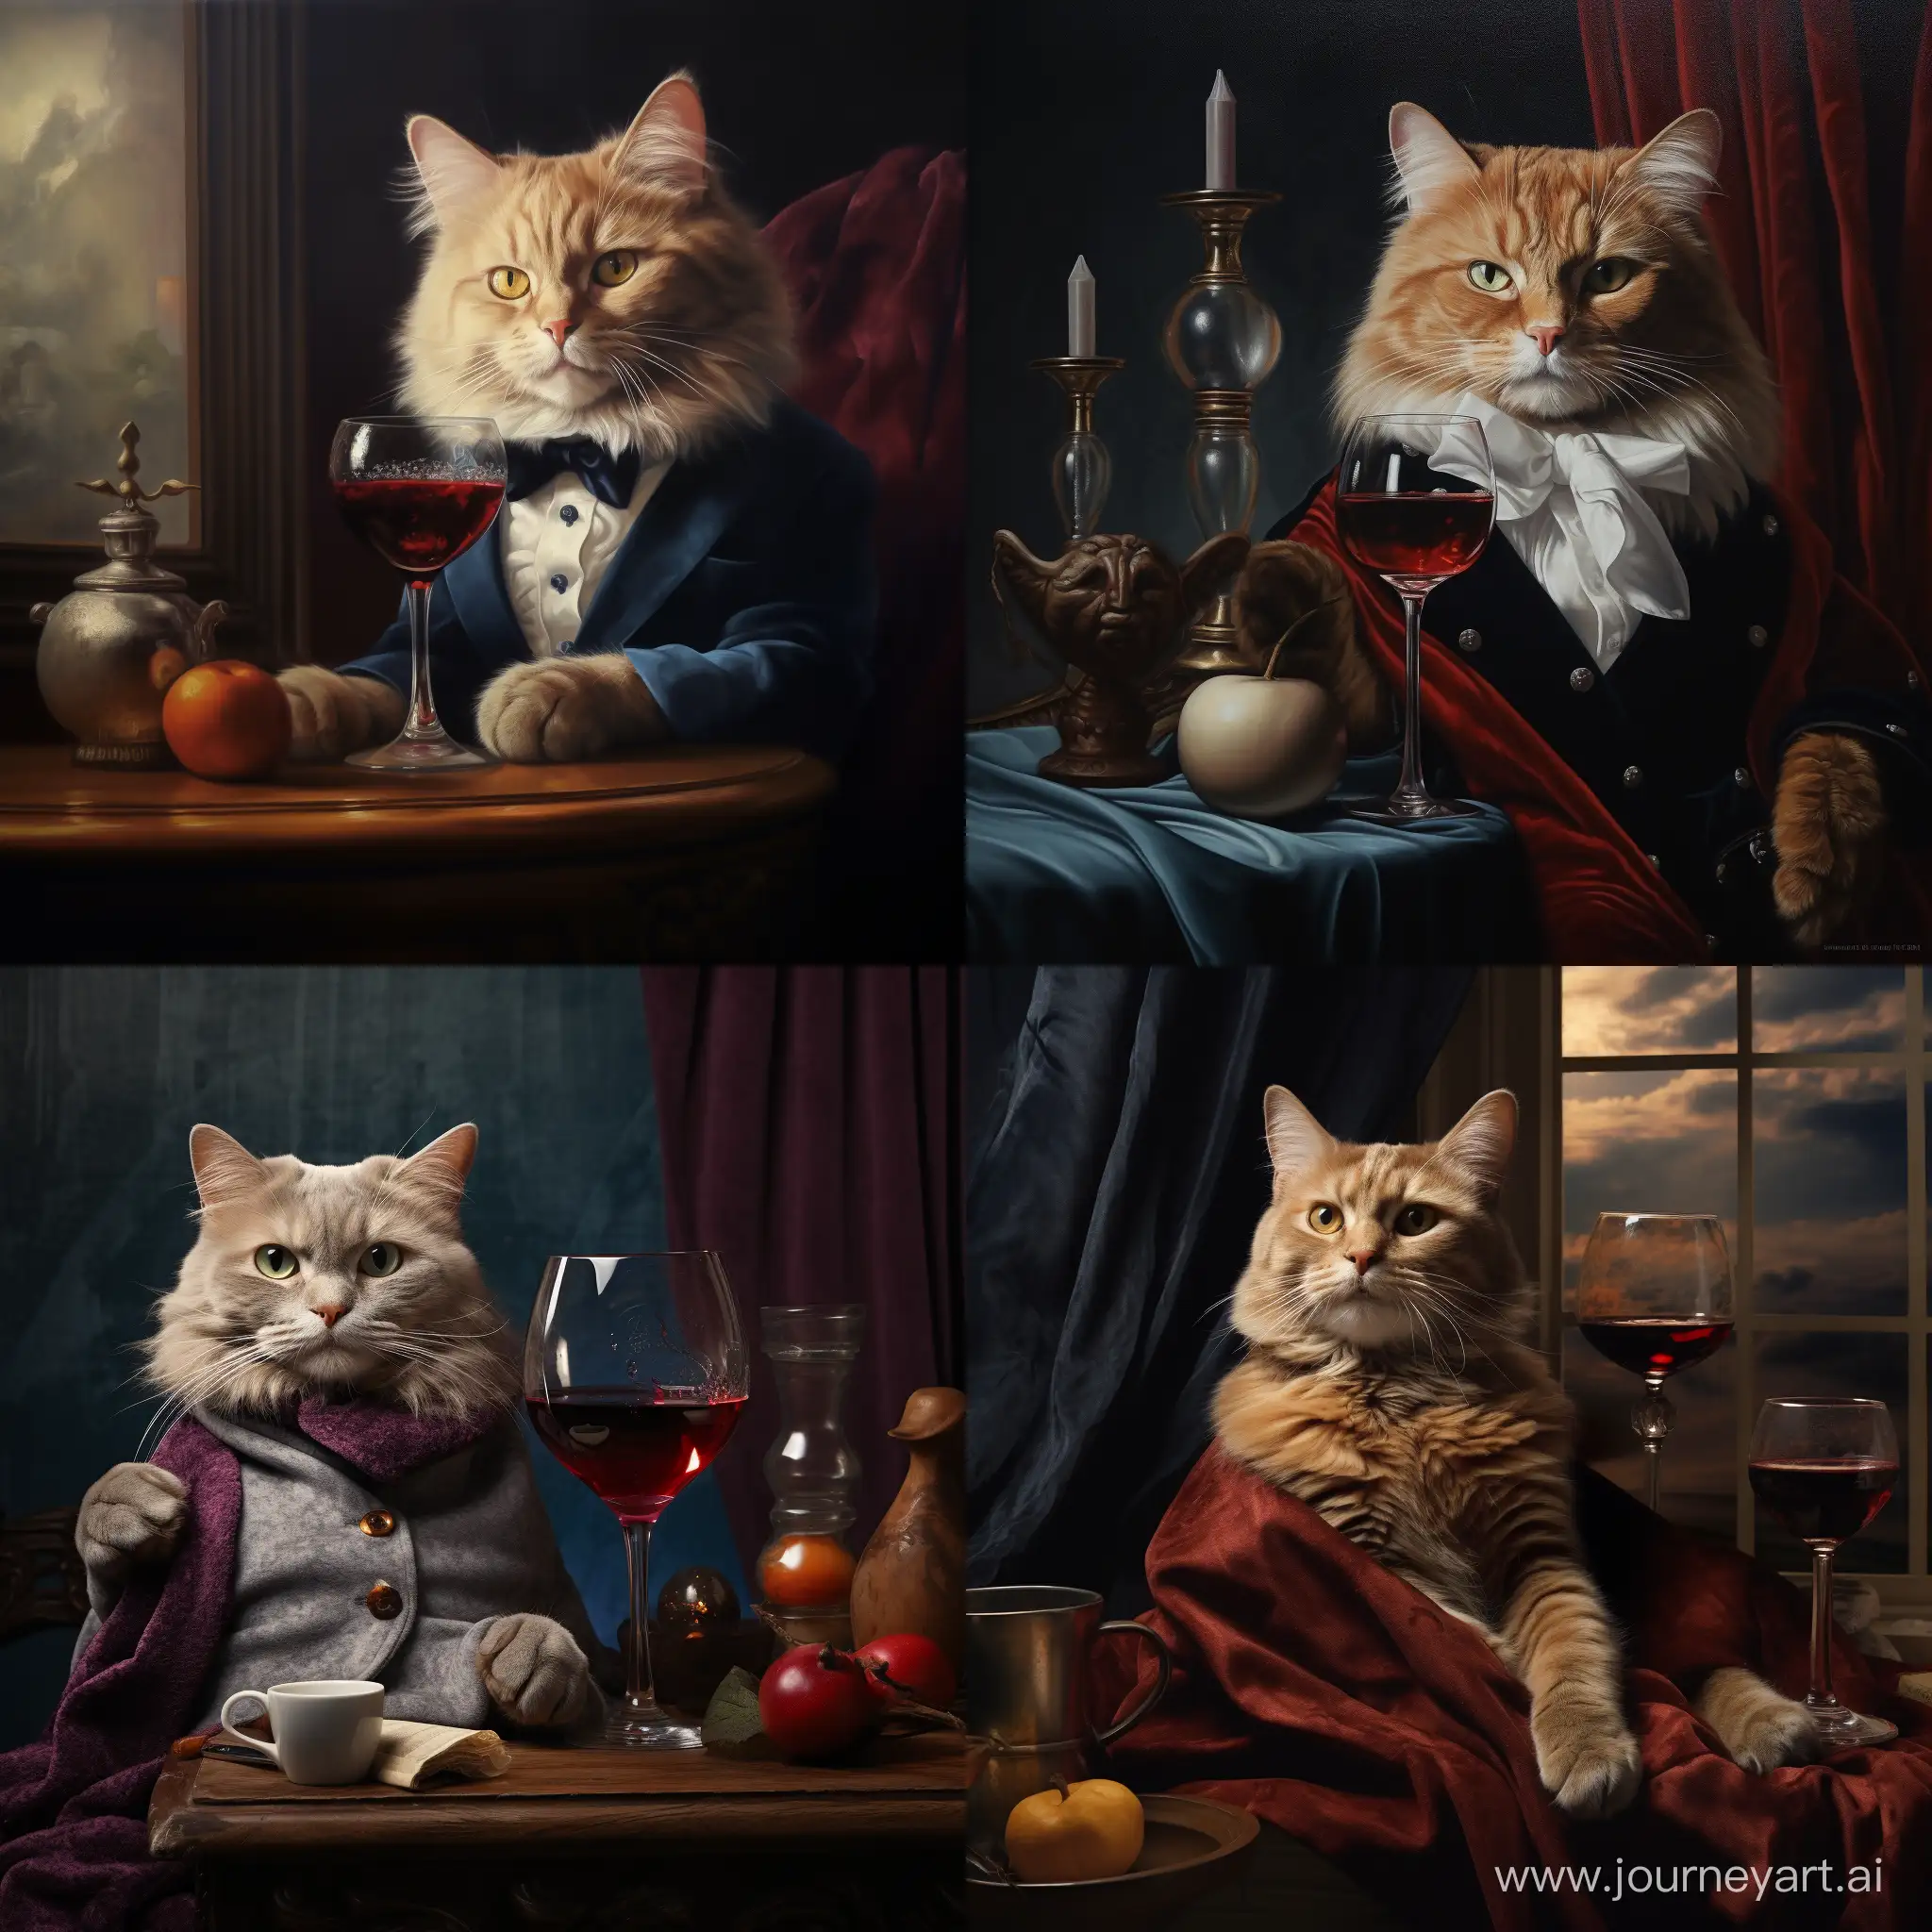 Surreal-Cat-Enjoying-Red-Wine-Whimsical-Feline-Art